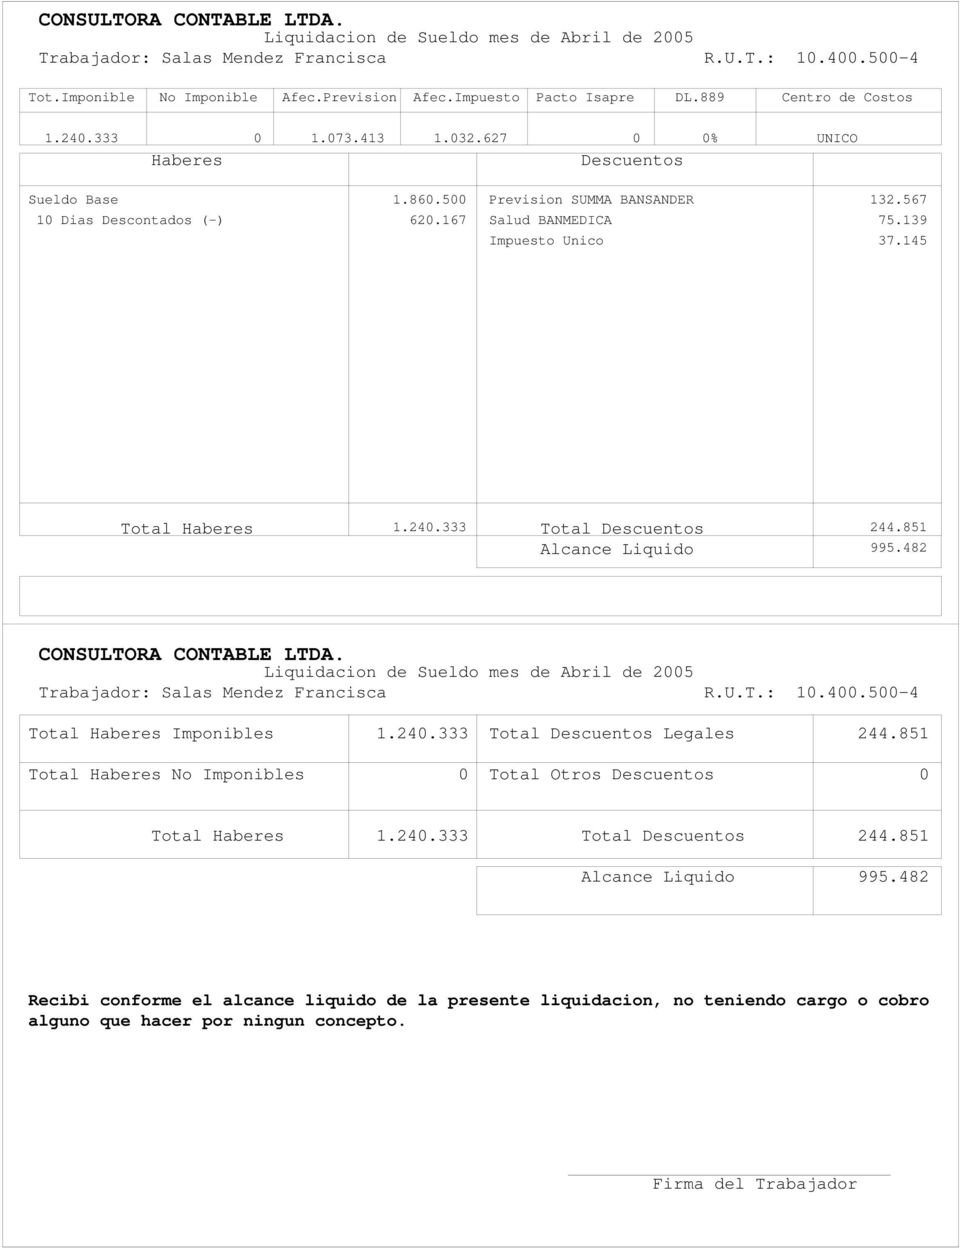 567 Salud BANMEDICA 75.139 Impuesto Unico 37.145 1.240.333 Total 244.851 995.